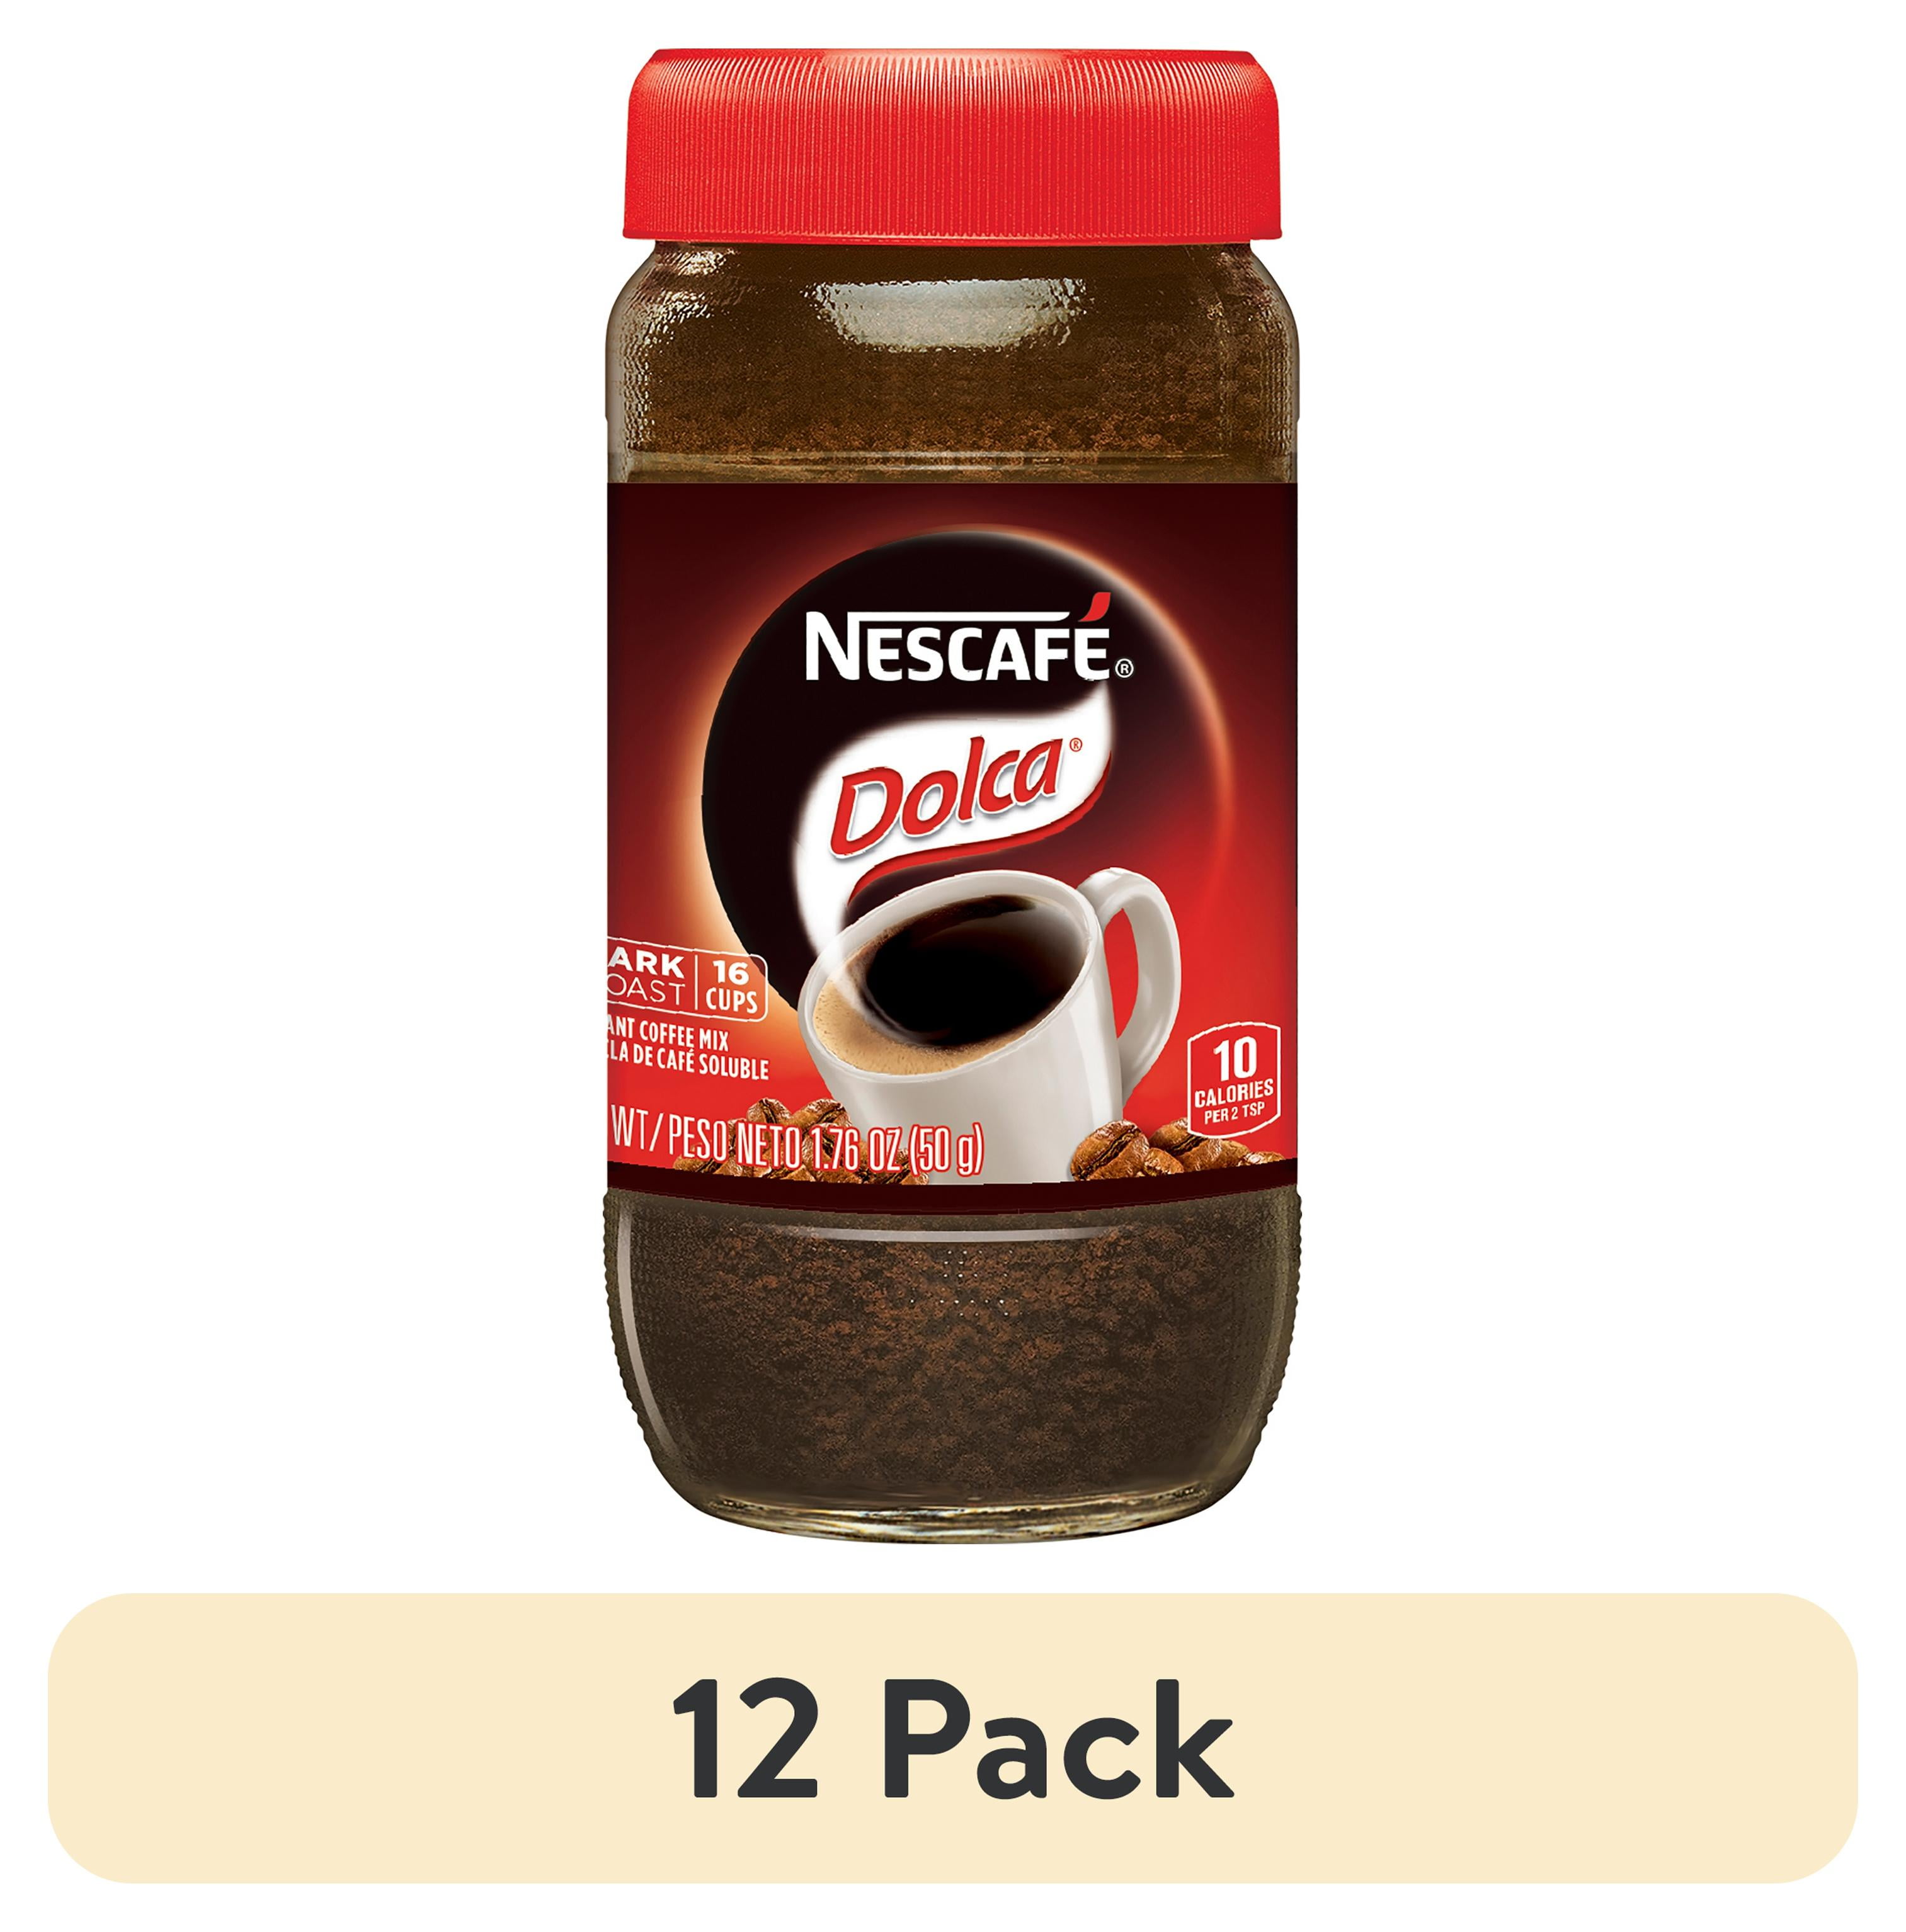 NESCAFE DOLCA Dark Roast Instant Coffee Mix 1.7 oz. Jar 